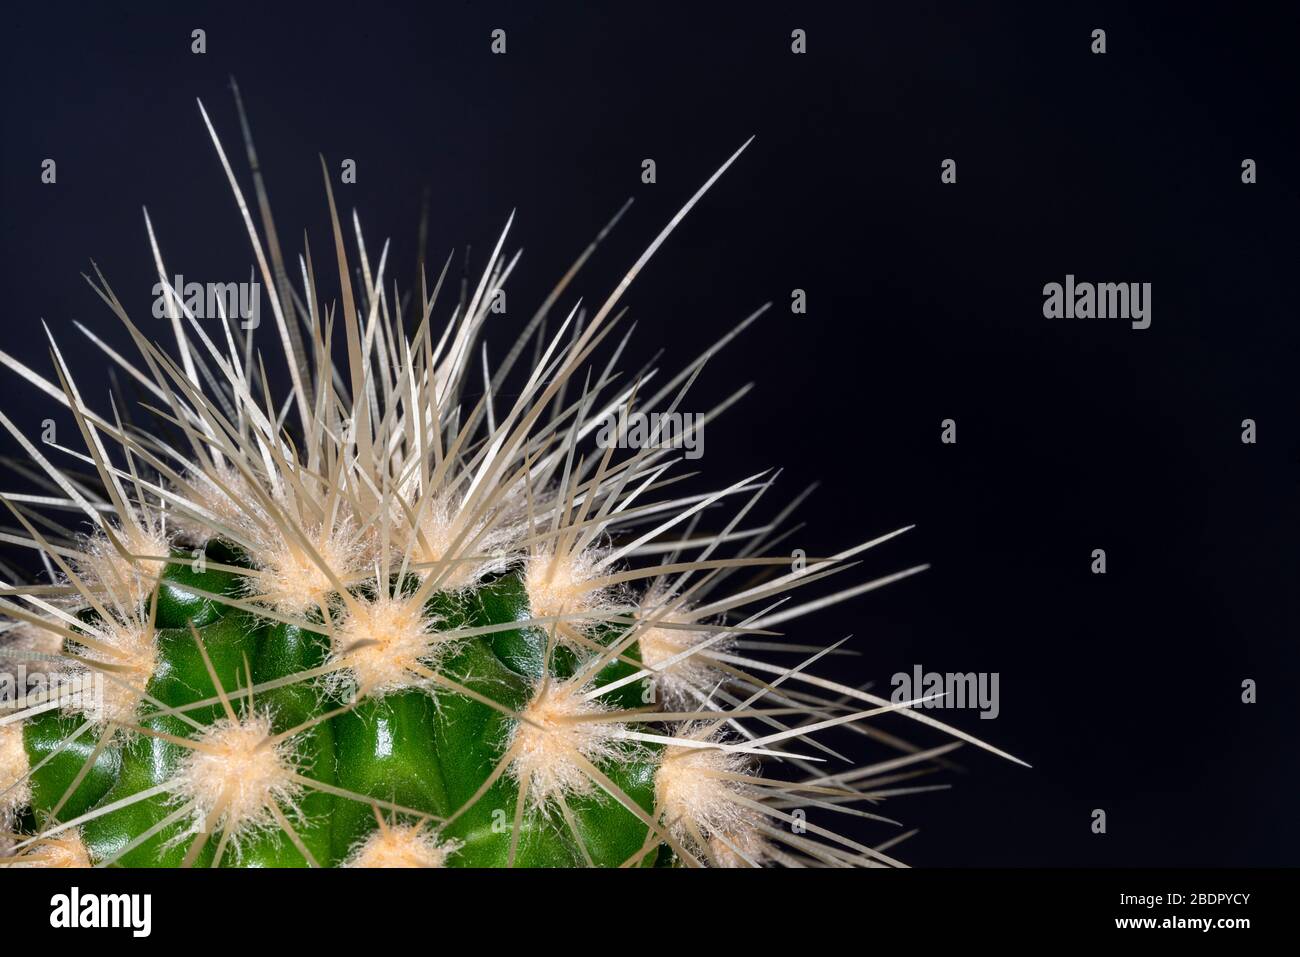 Gros plan sur un cactus très épineux, avec des aiguilles pointues nocives. Banque D'Images